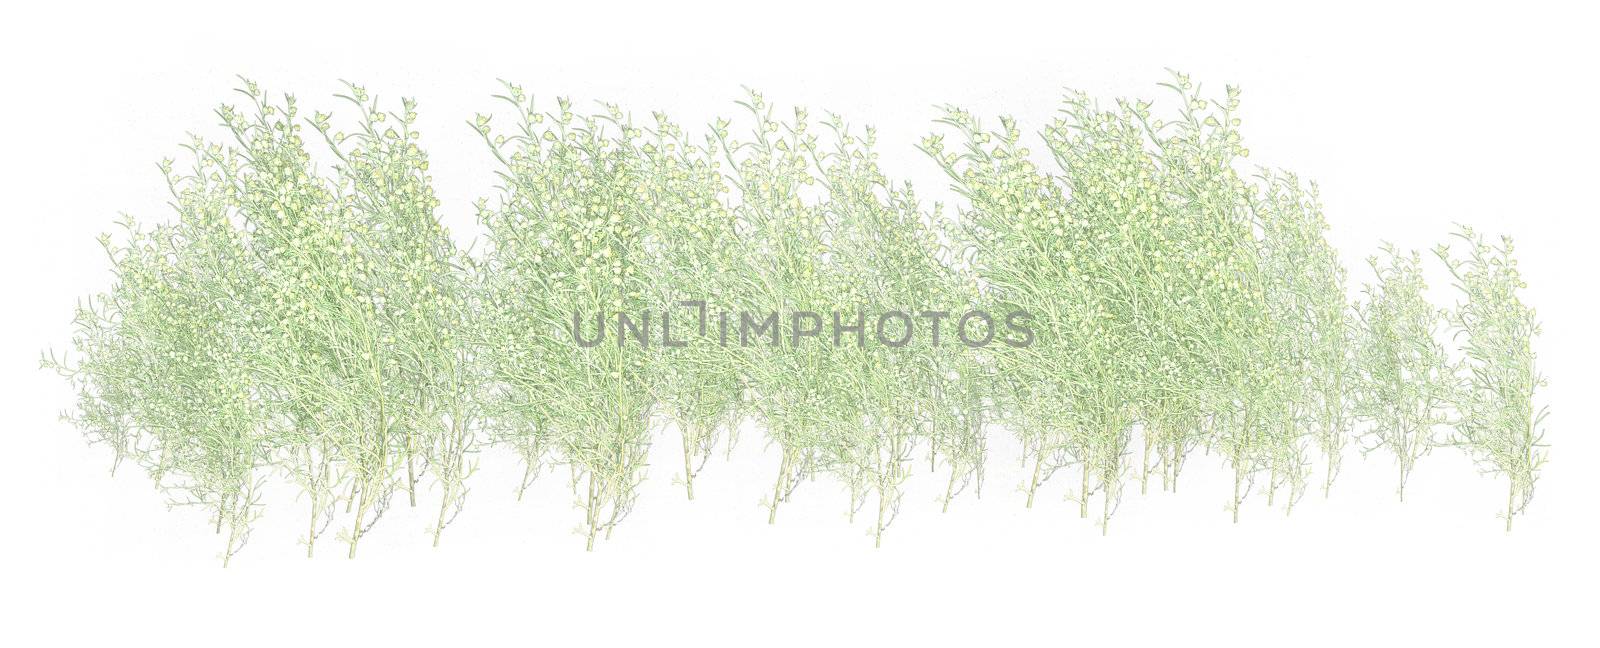 White & green grass  foliage on a white background